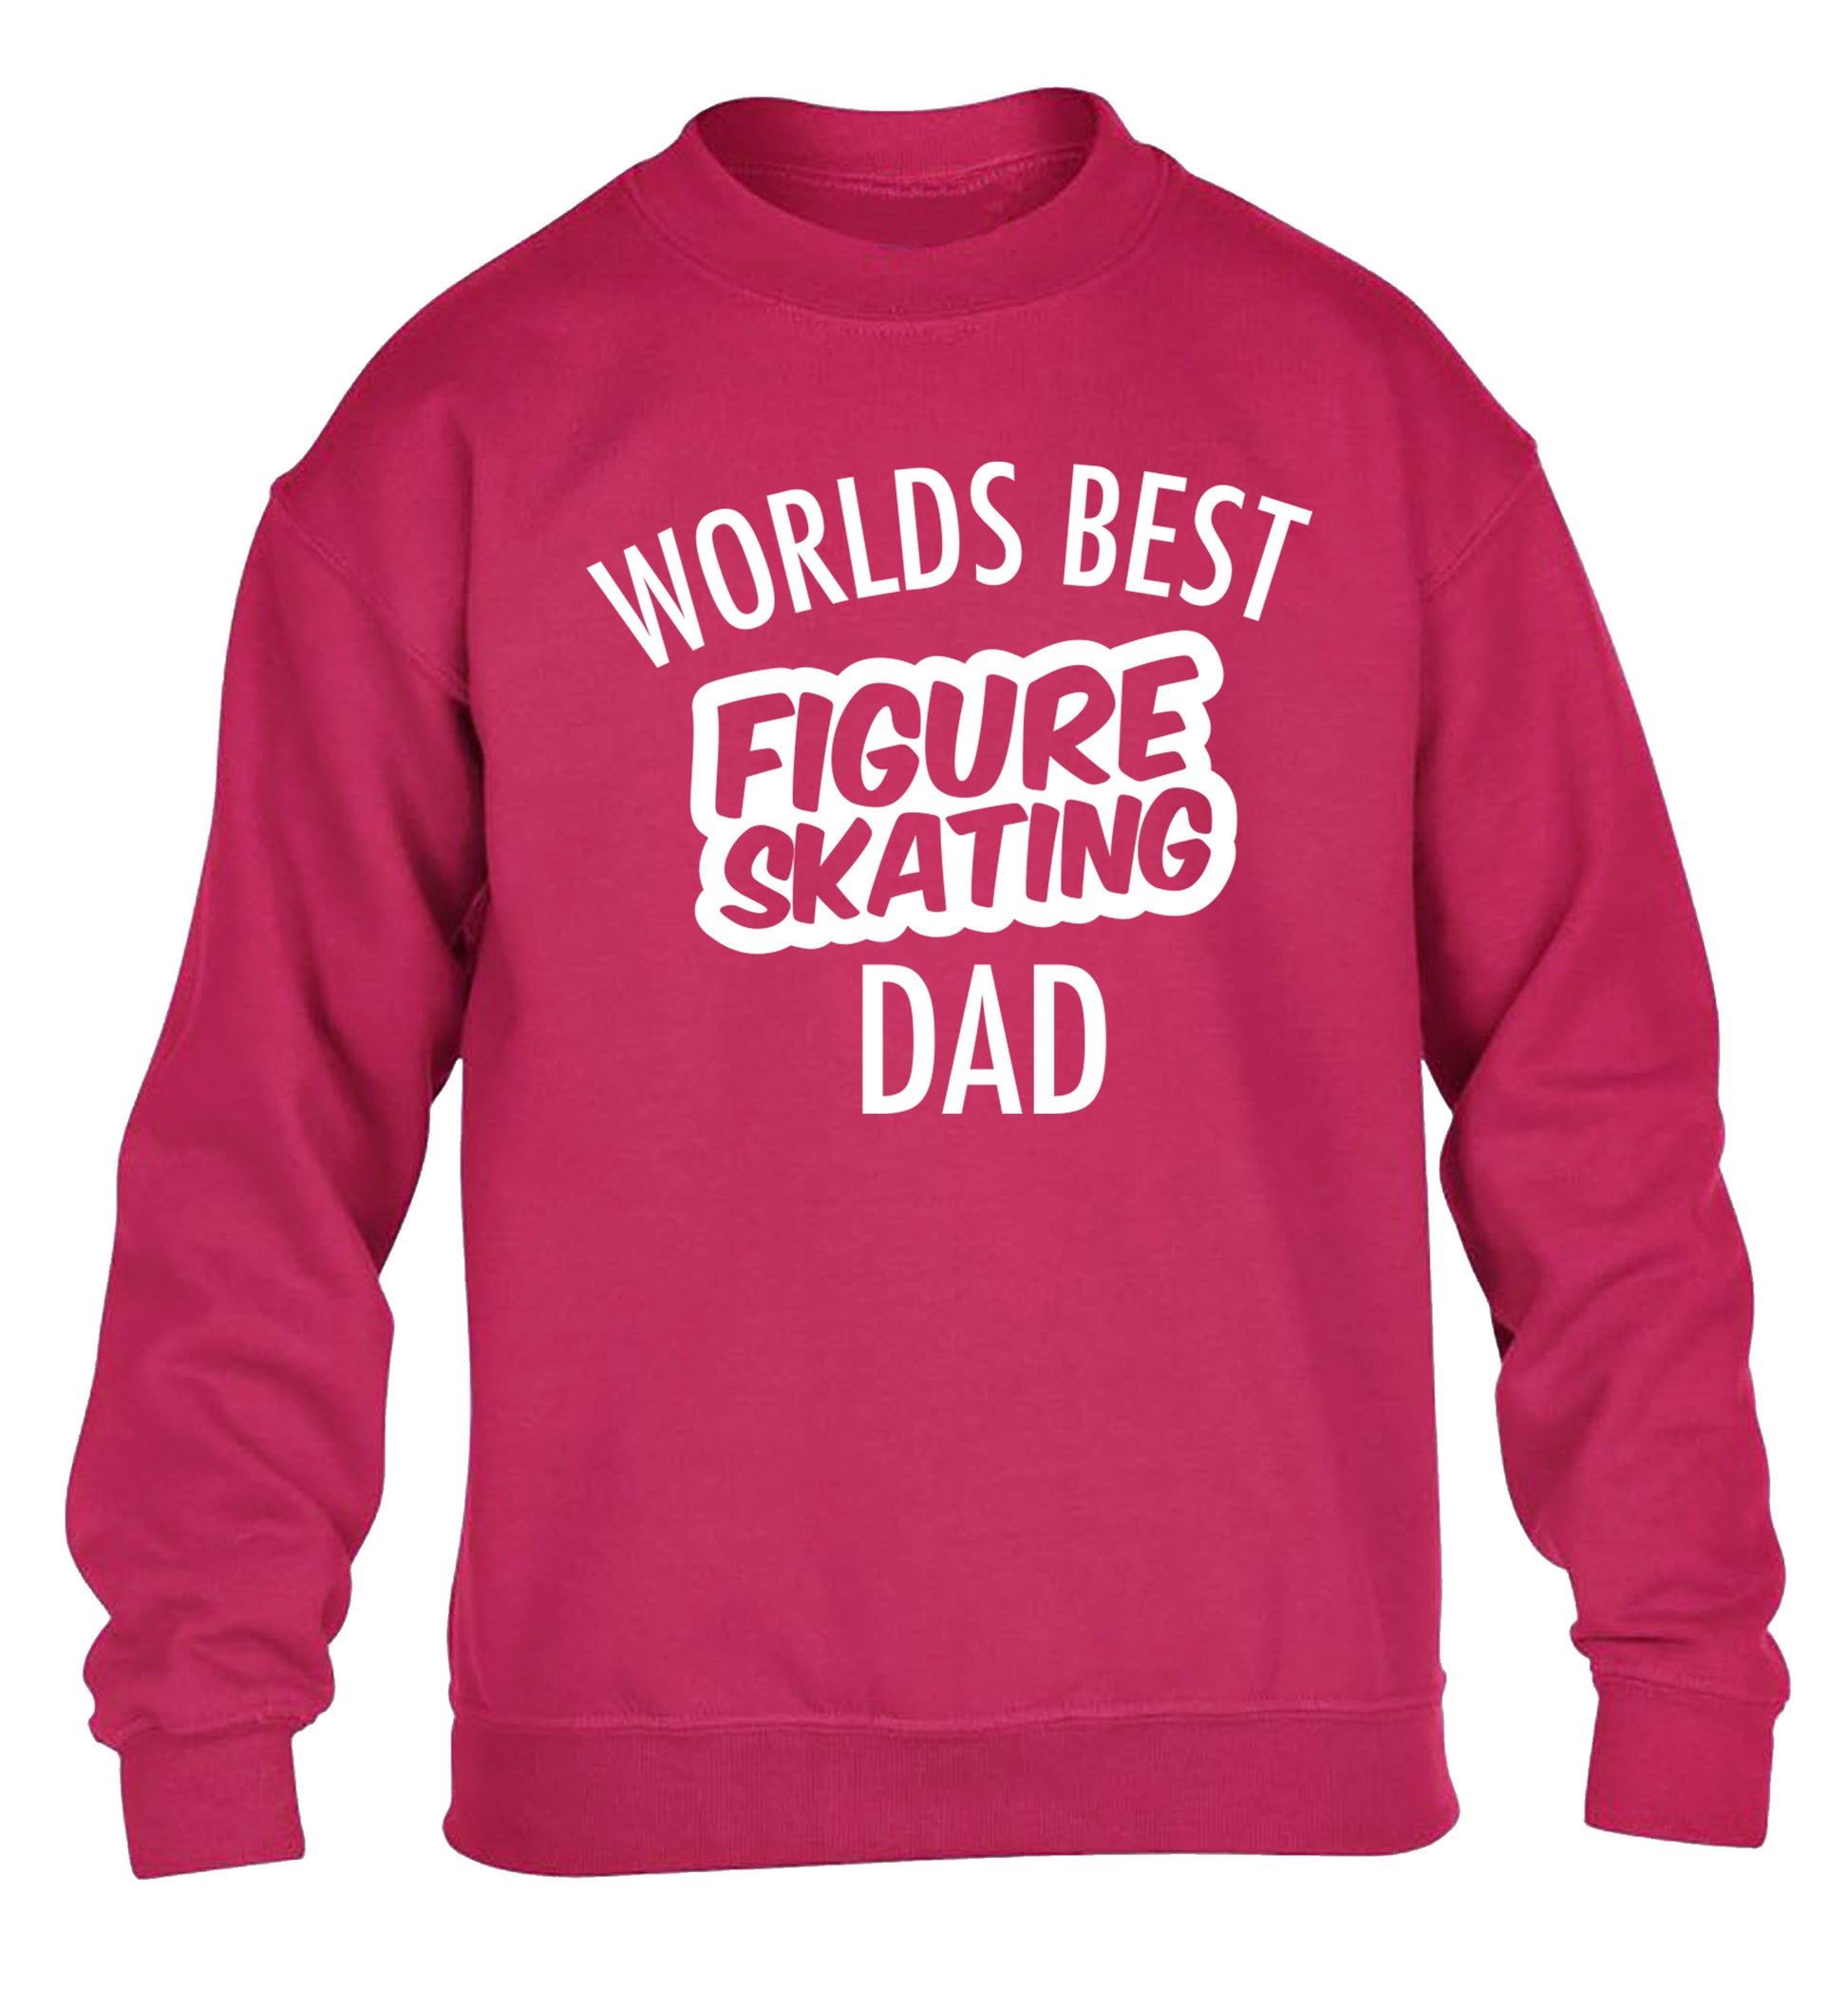 Worlds best figure skating dad children's pink sweater 12-14 Years